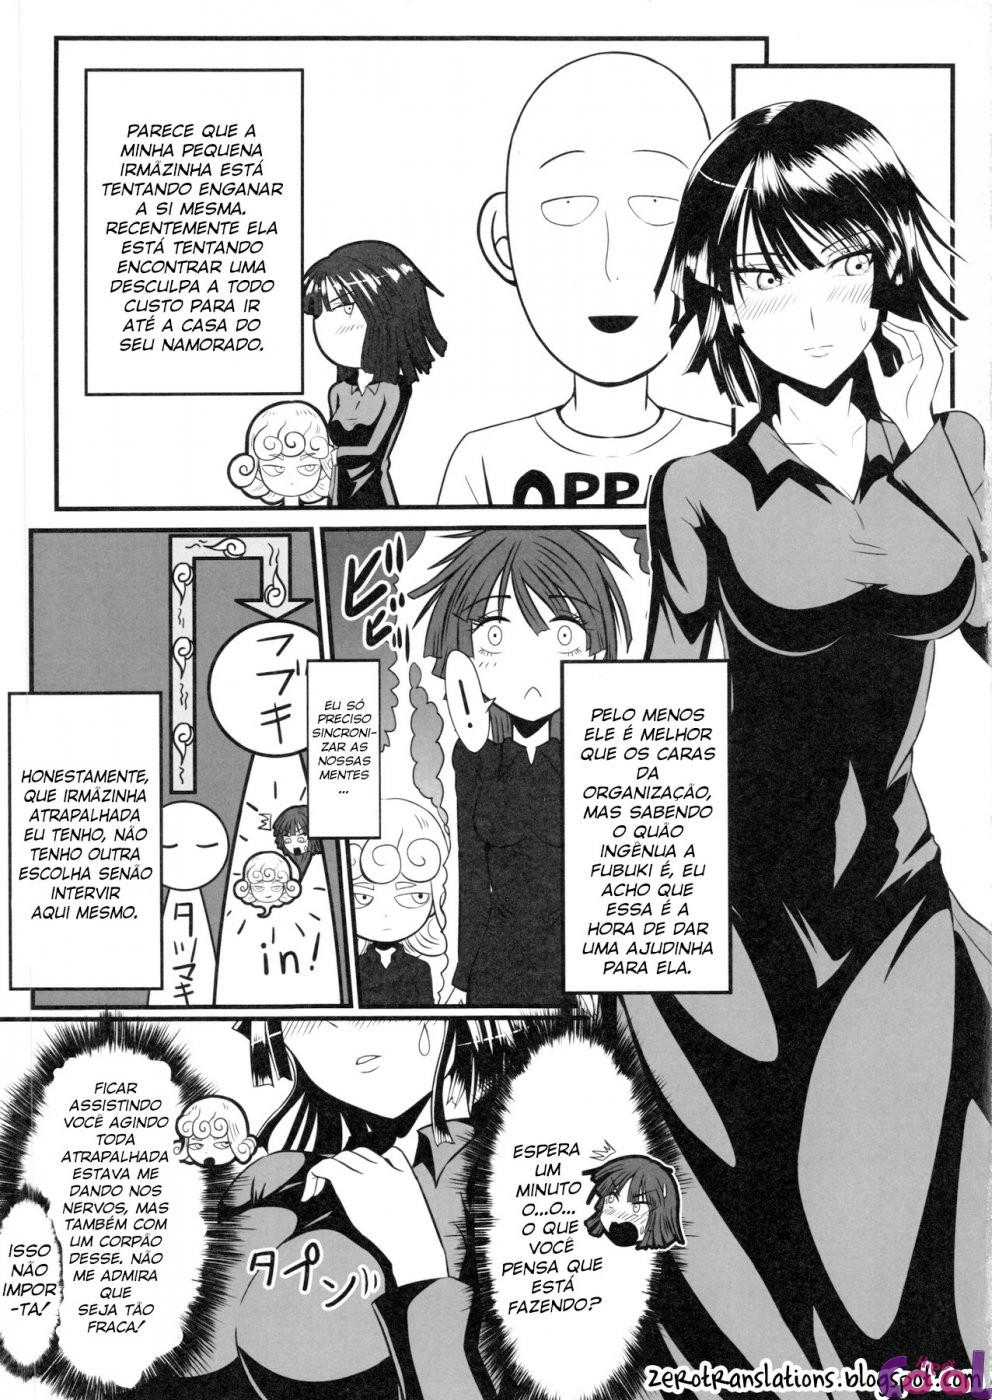 dekoboko-love-sister-chapter-01-page-04.jpg